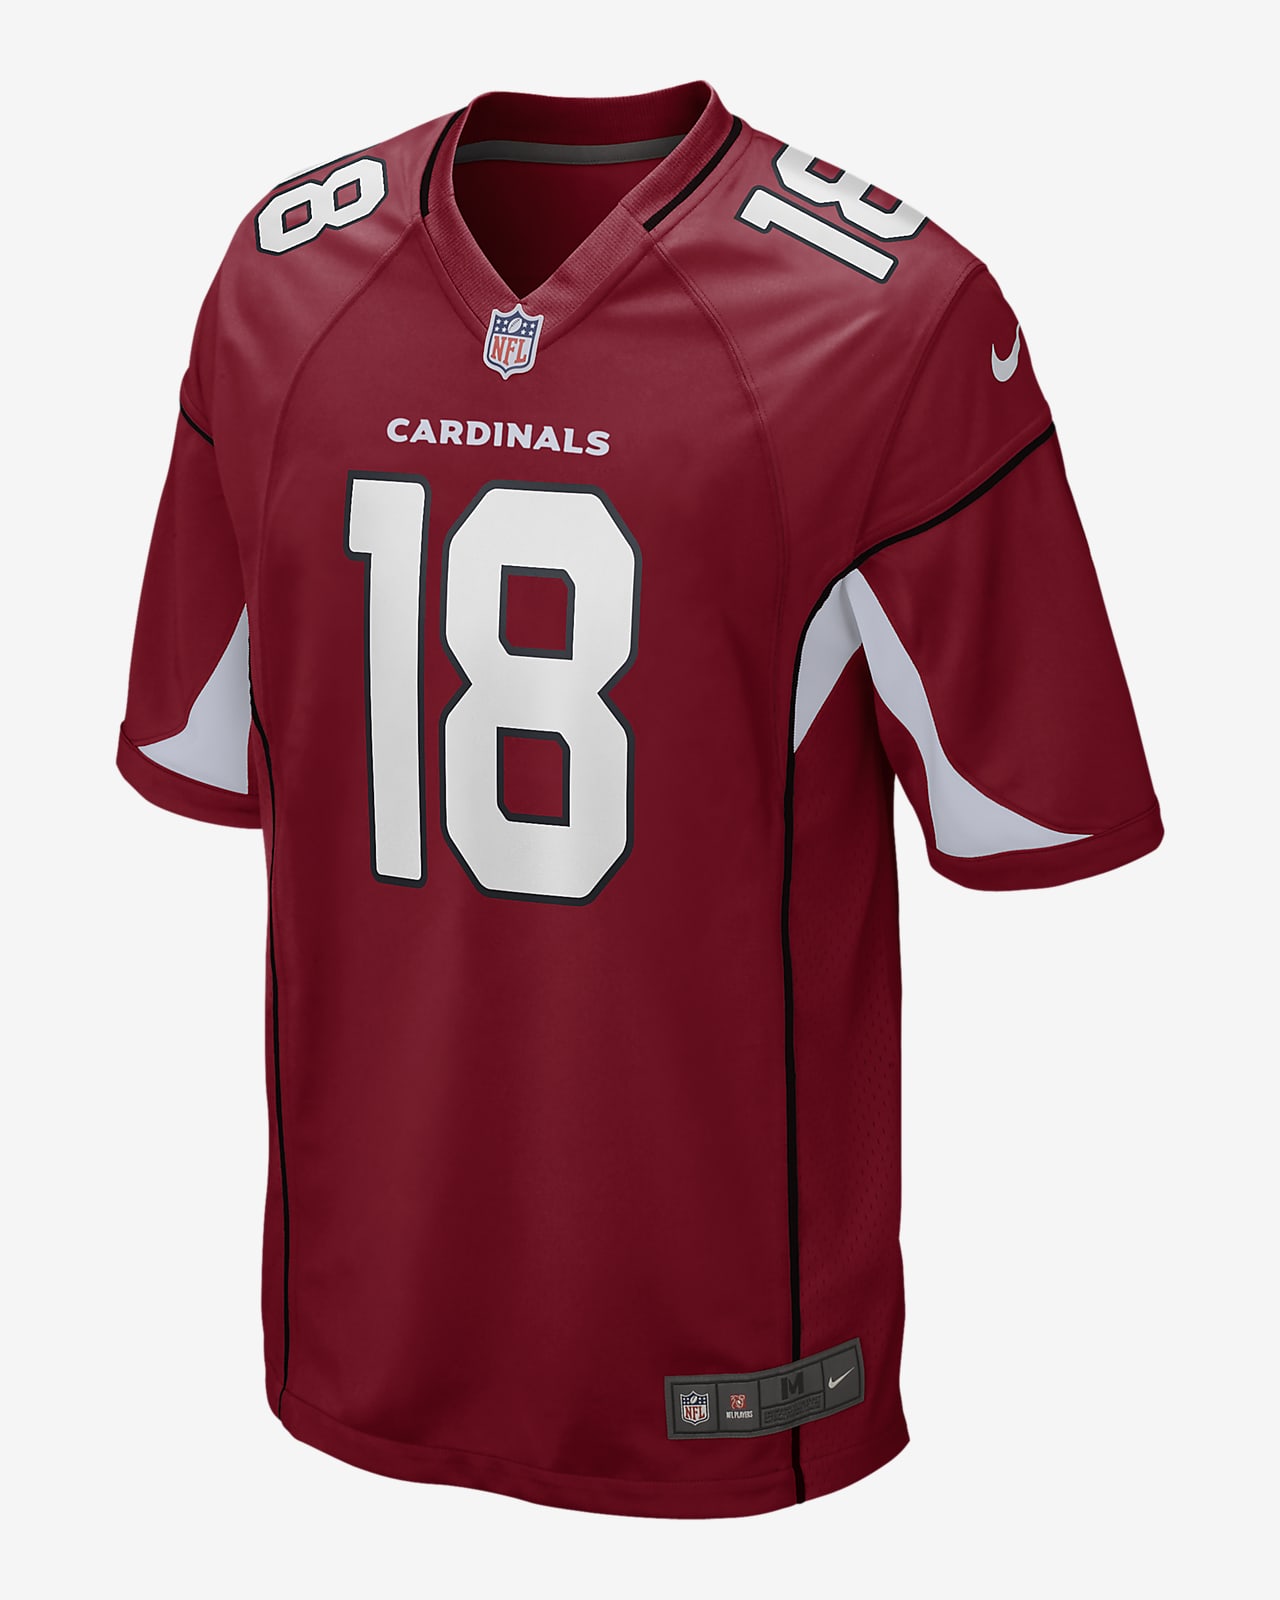 Nike NFL Arizona Cardinals (A.J. Green) Men's Game Football Jersey - Cardinal Red S